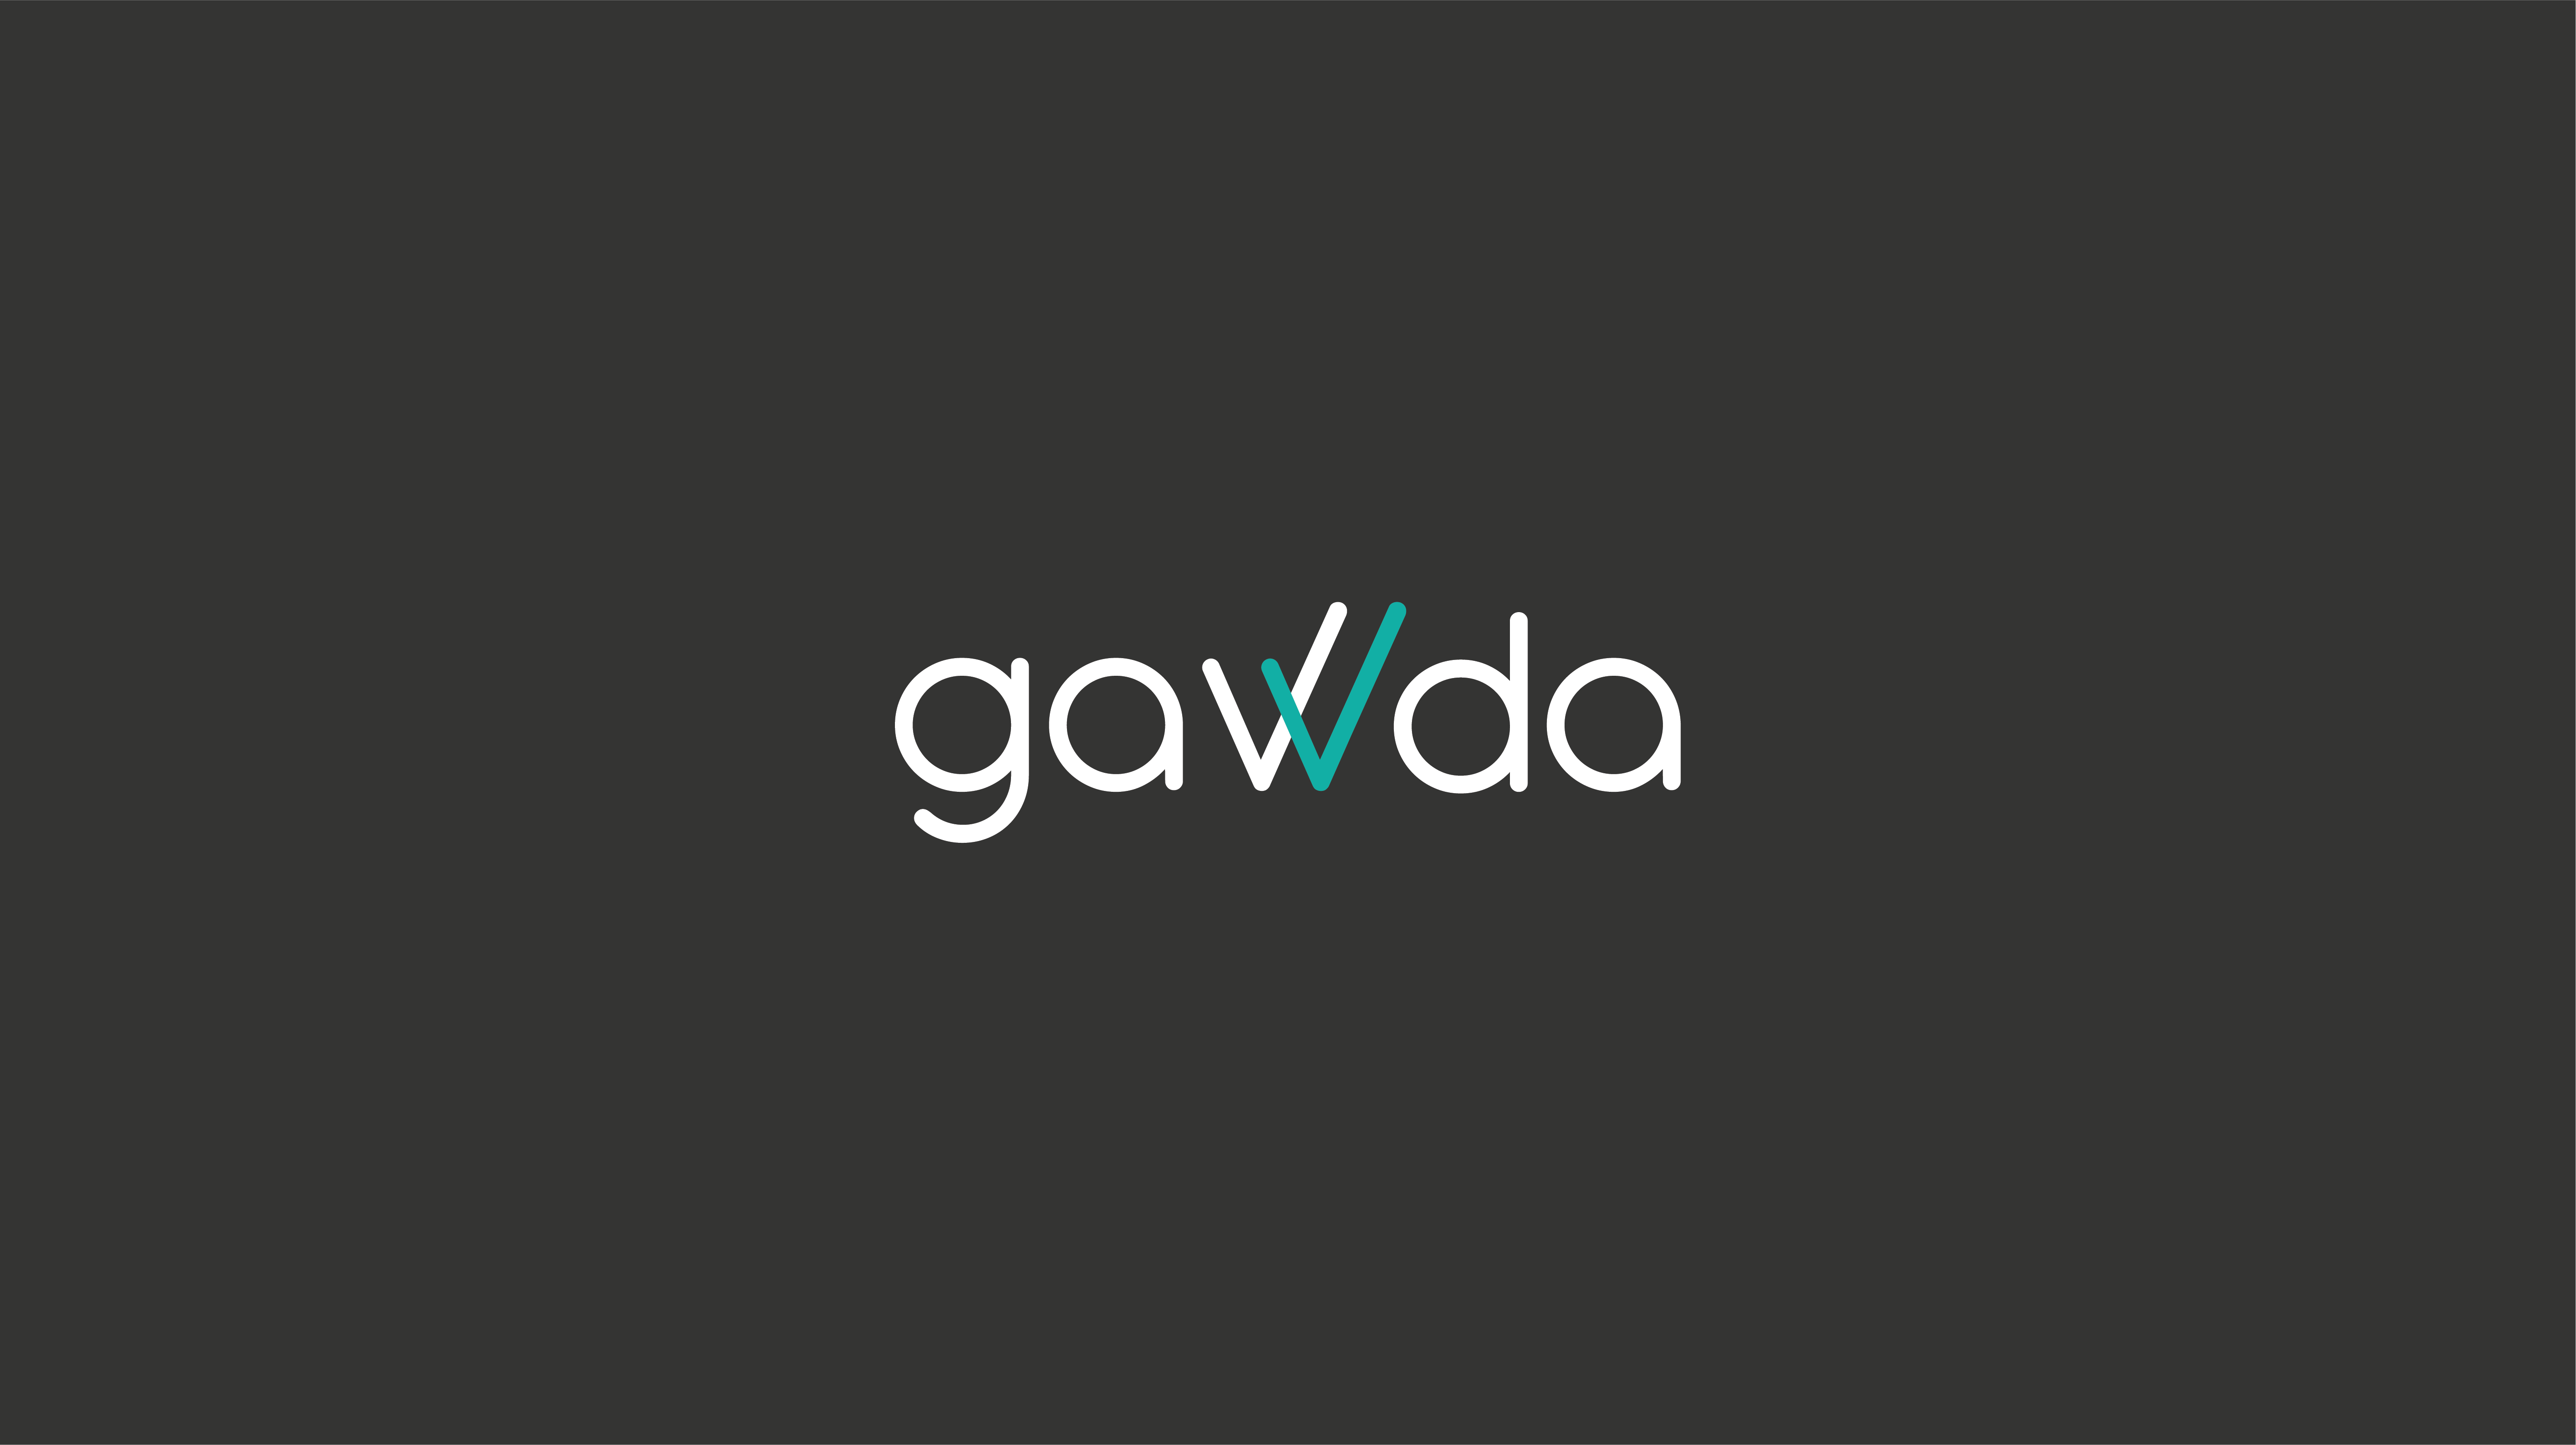 gawda - Final Logo - CMYK-03